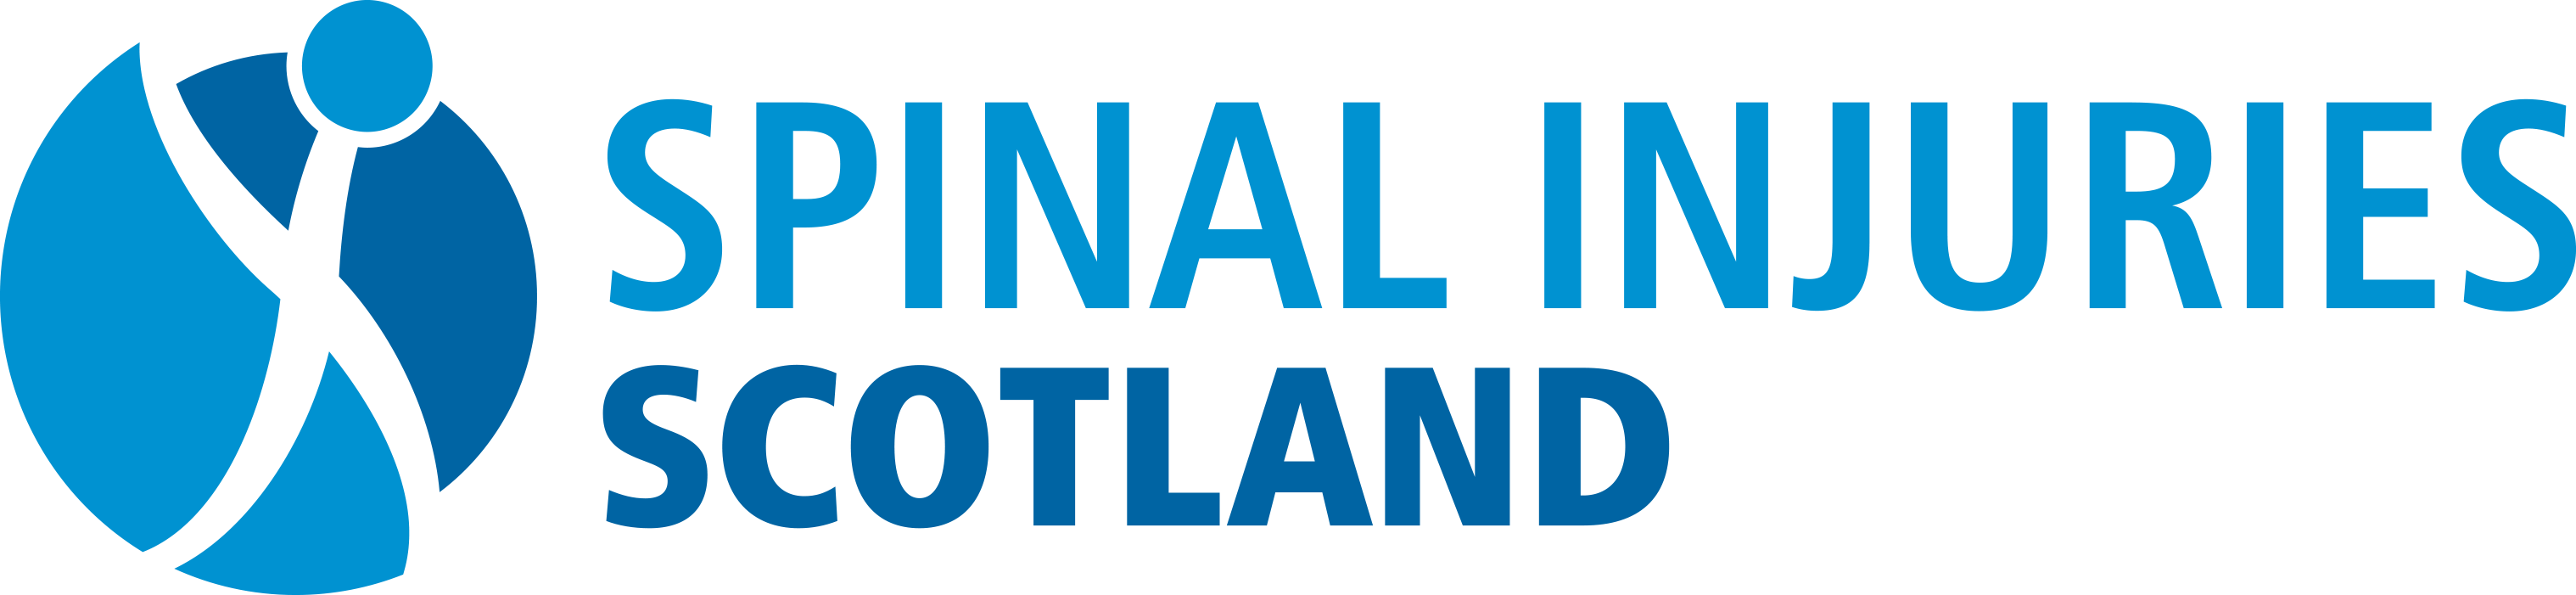 Spinal Injuries Scotland Logo